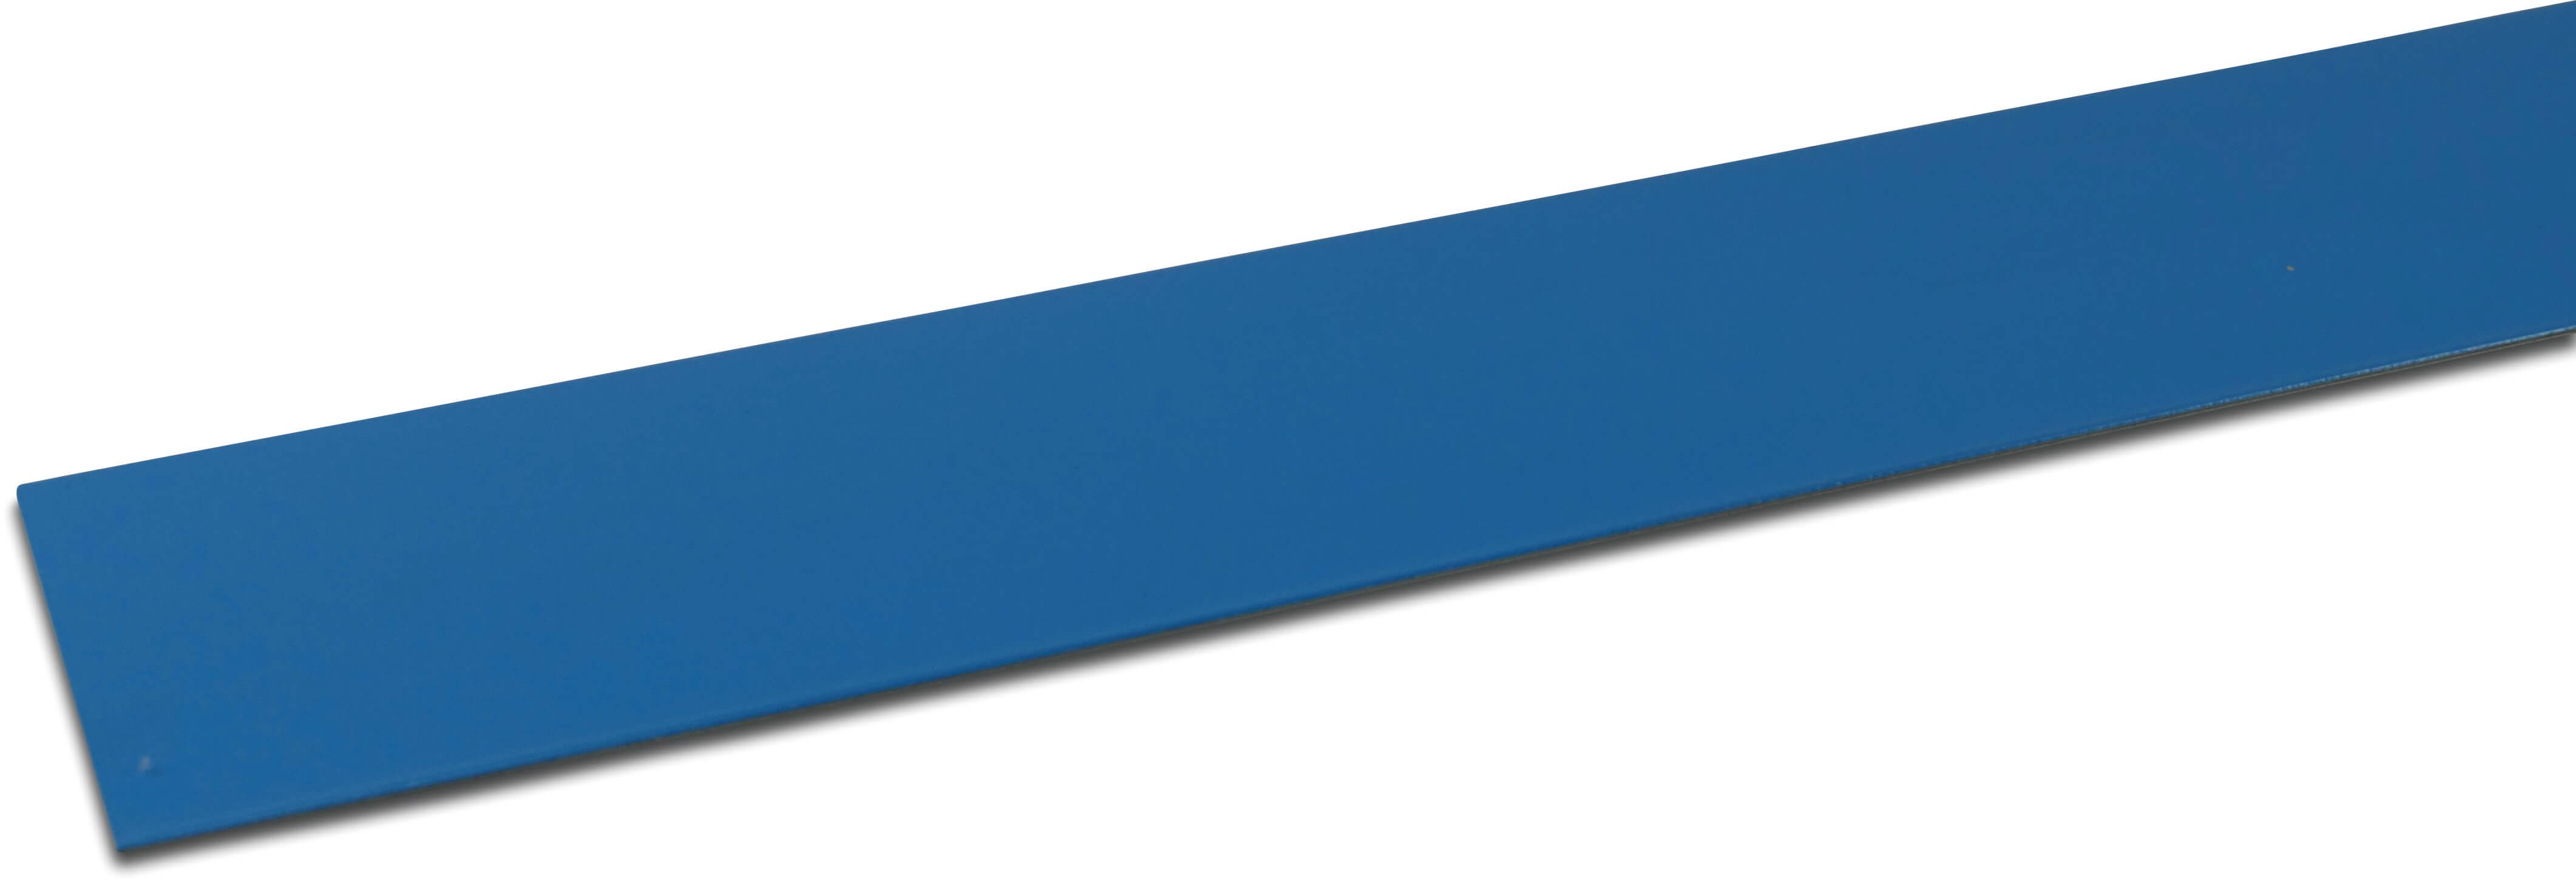 Elbe Verbundblech PVC beschichtet Metal 70 mm x 2000 mm Blau 2m